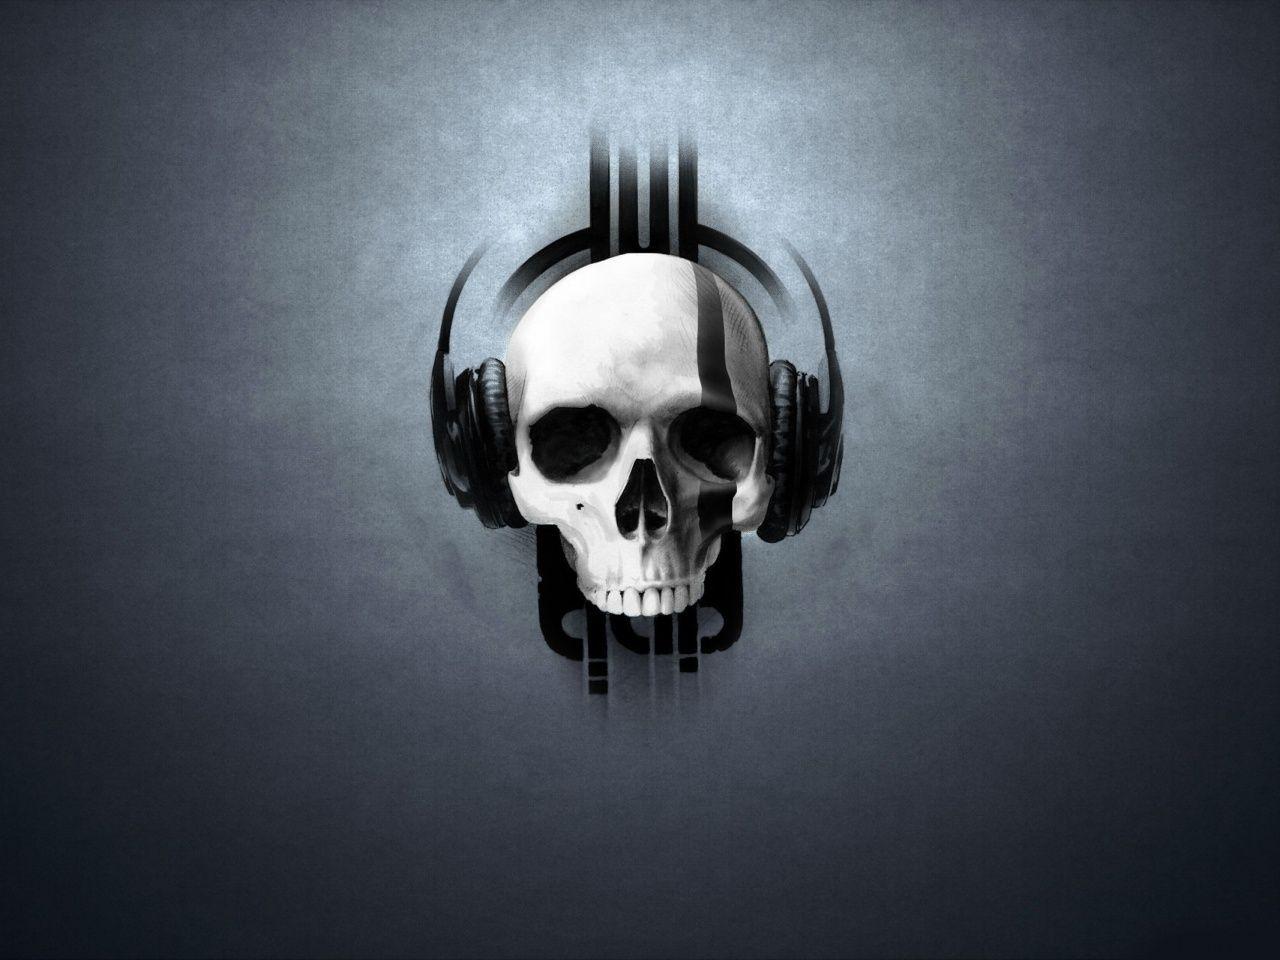 Skull With Headphones Wallpaper